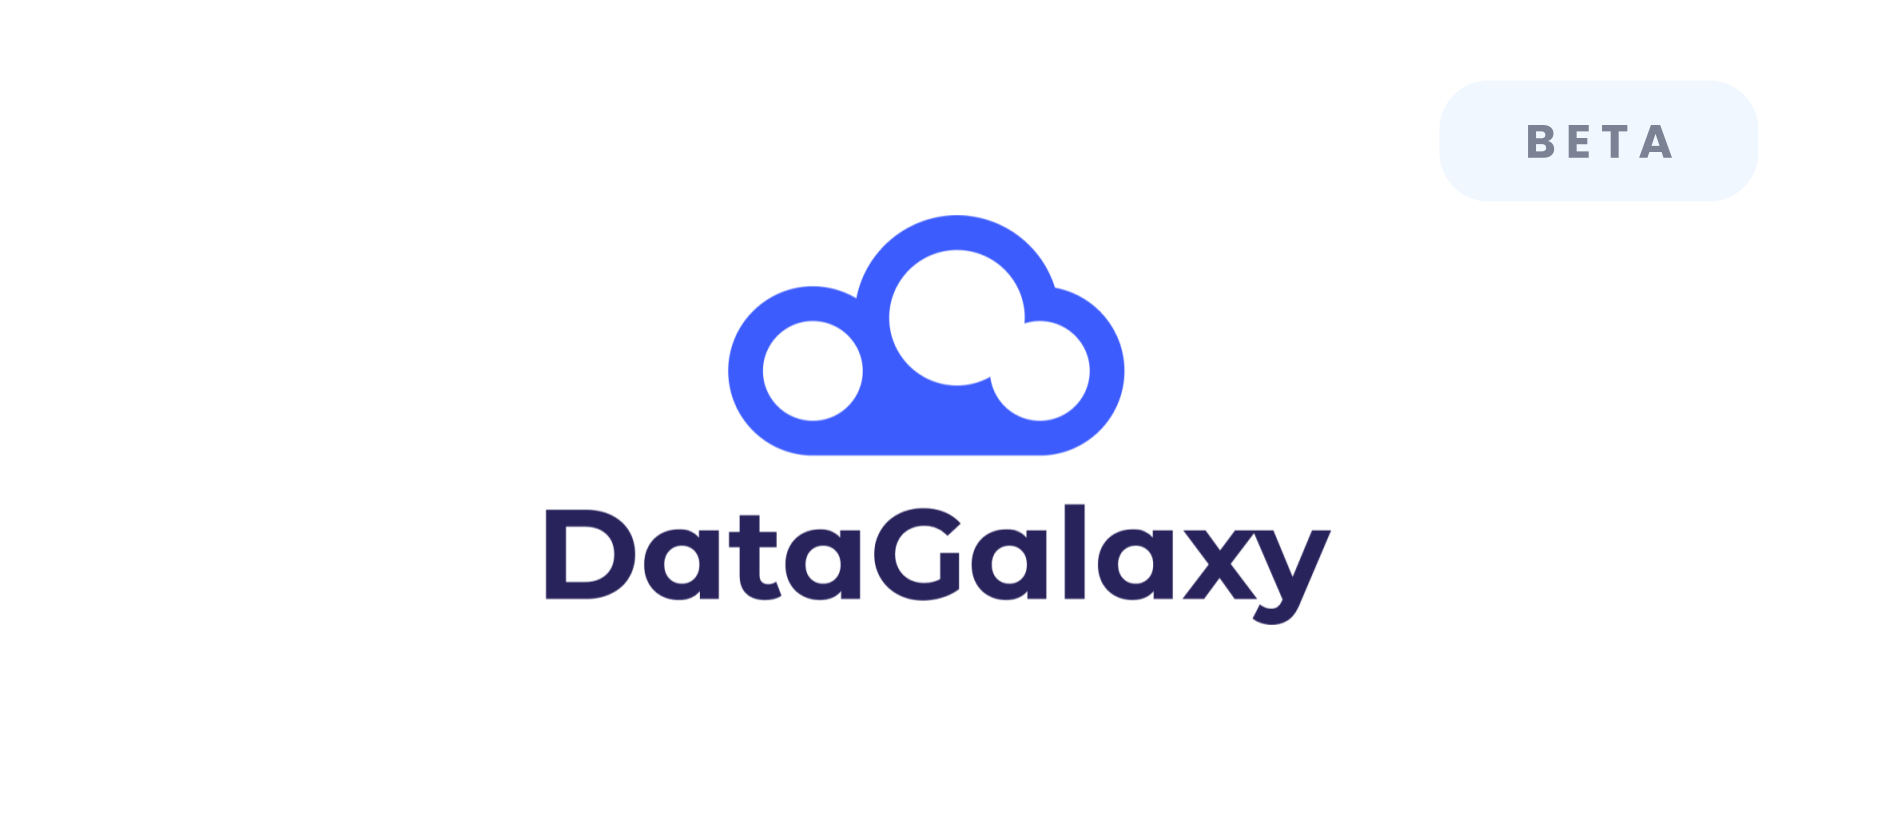 Data Catalogs - DataGalaxy - Beta 